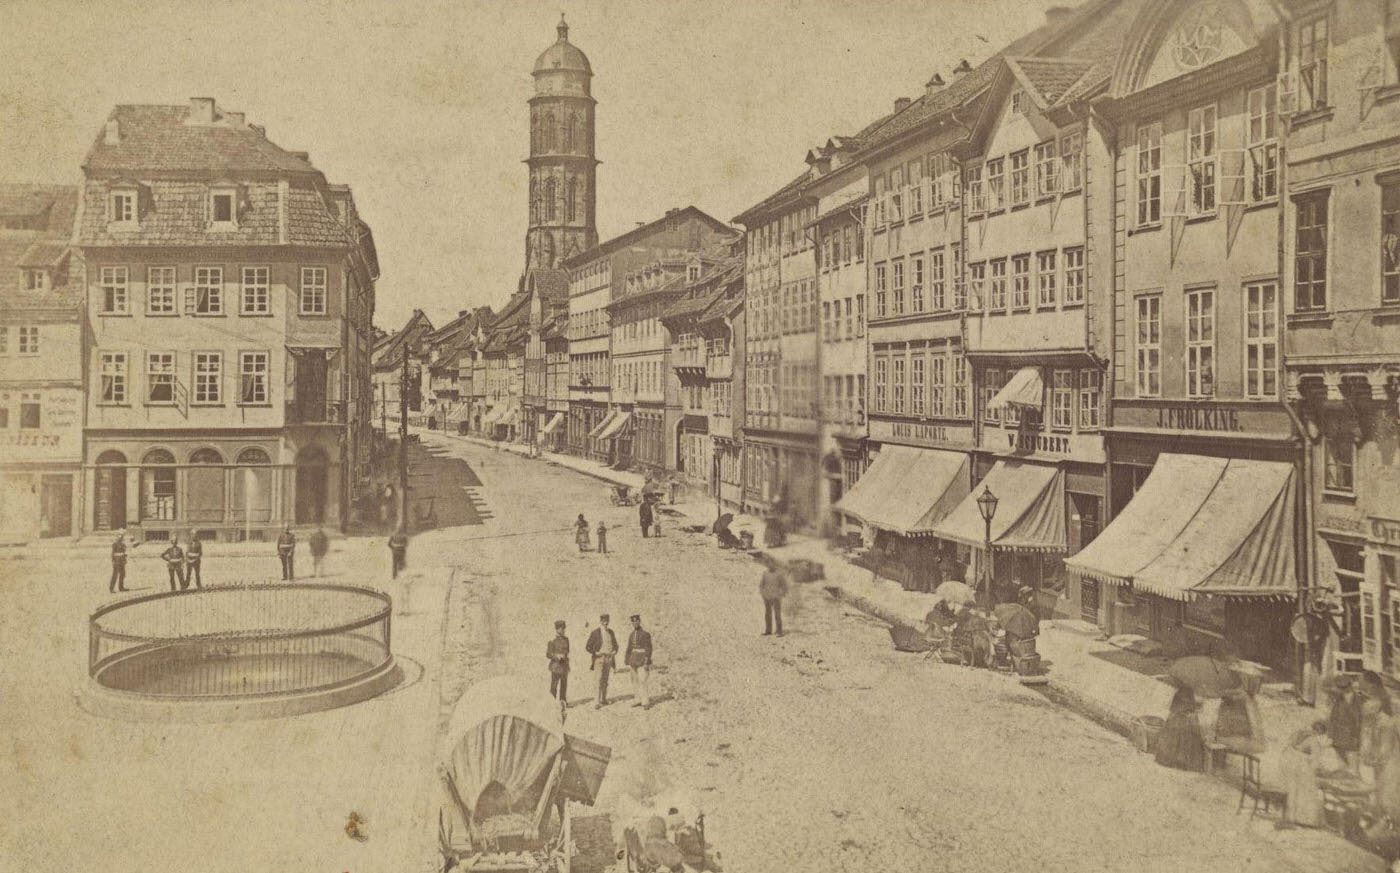 Main street, Gottingen by H. Hoyer, 1880.